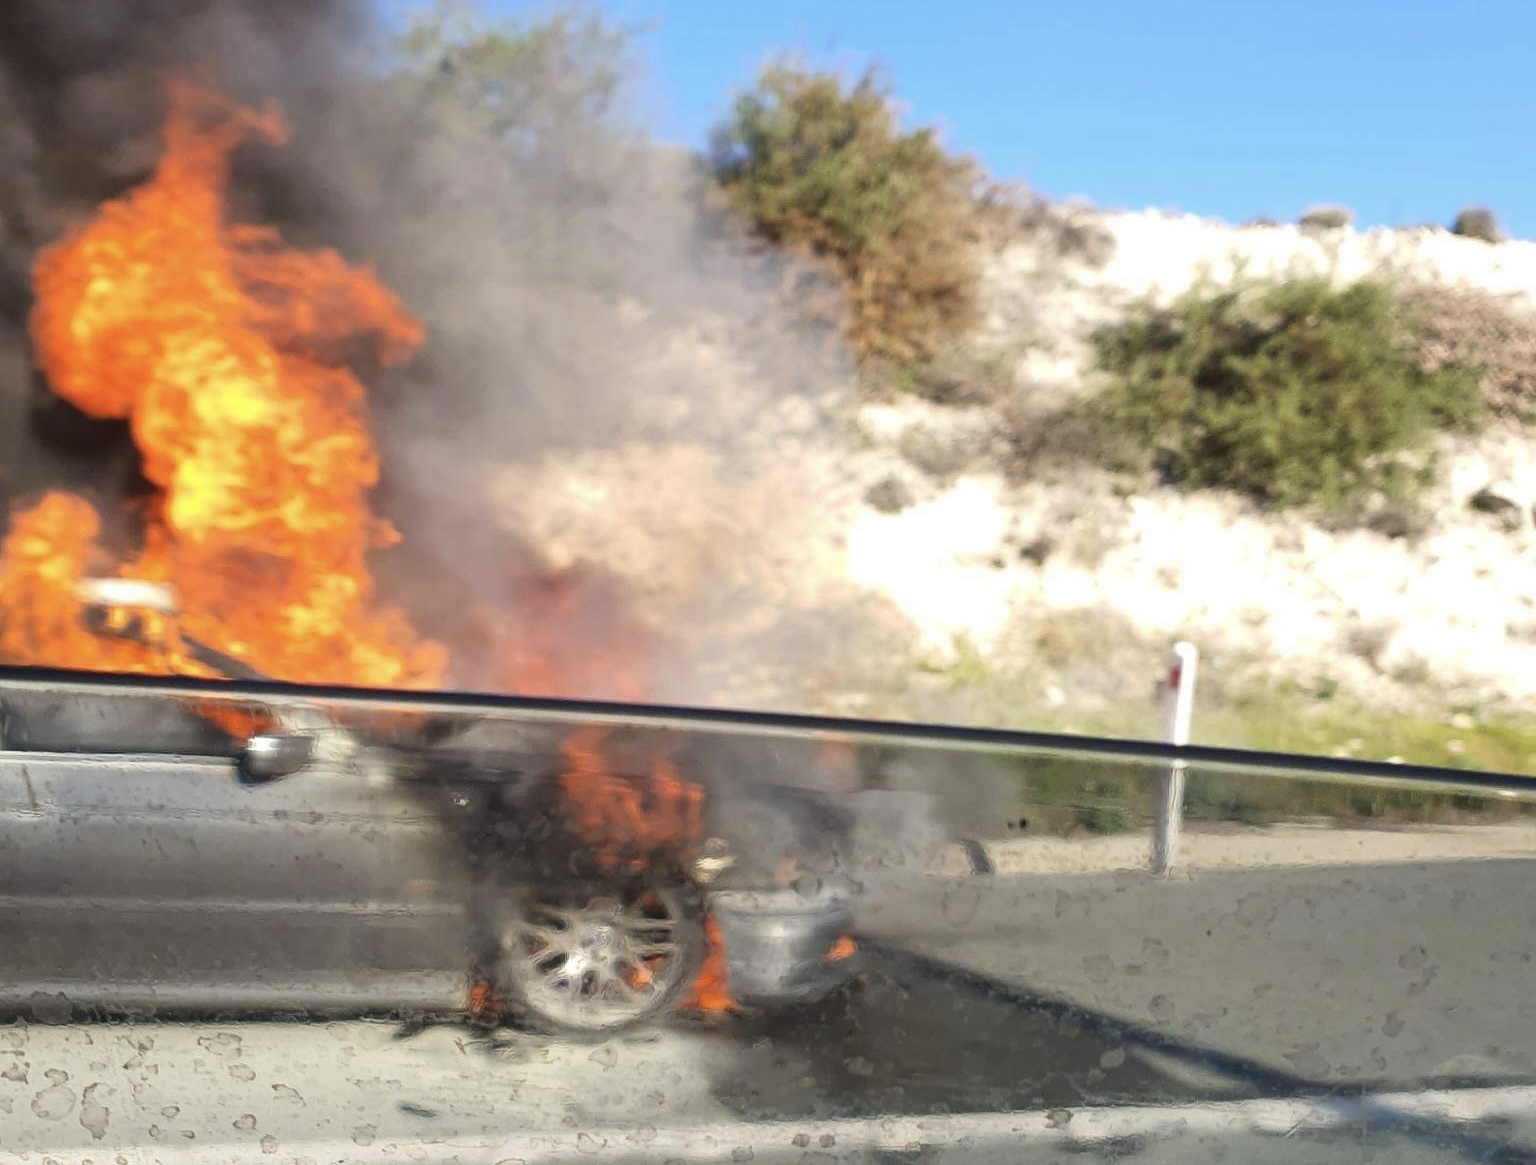 Φωτιά σε όχημα στο αυτοκινητόδρομο Παφου-Λεμεσου κοντά στο Πισσουρι(ΒΙΝΤΕΟ)